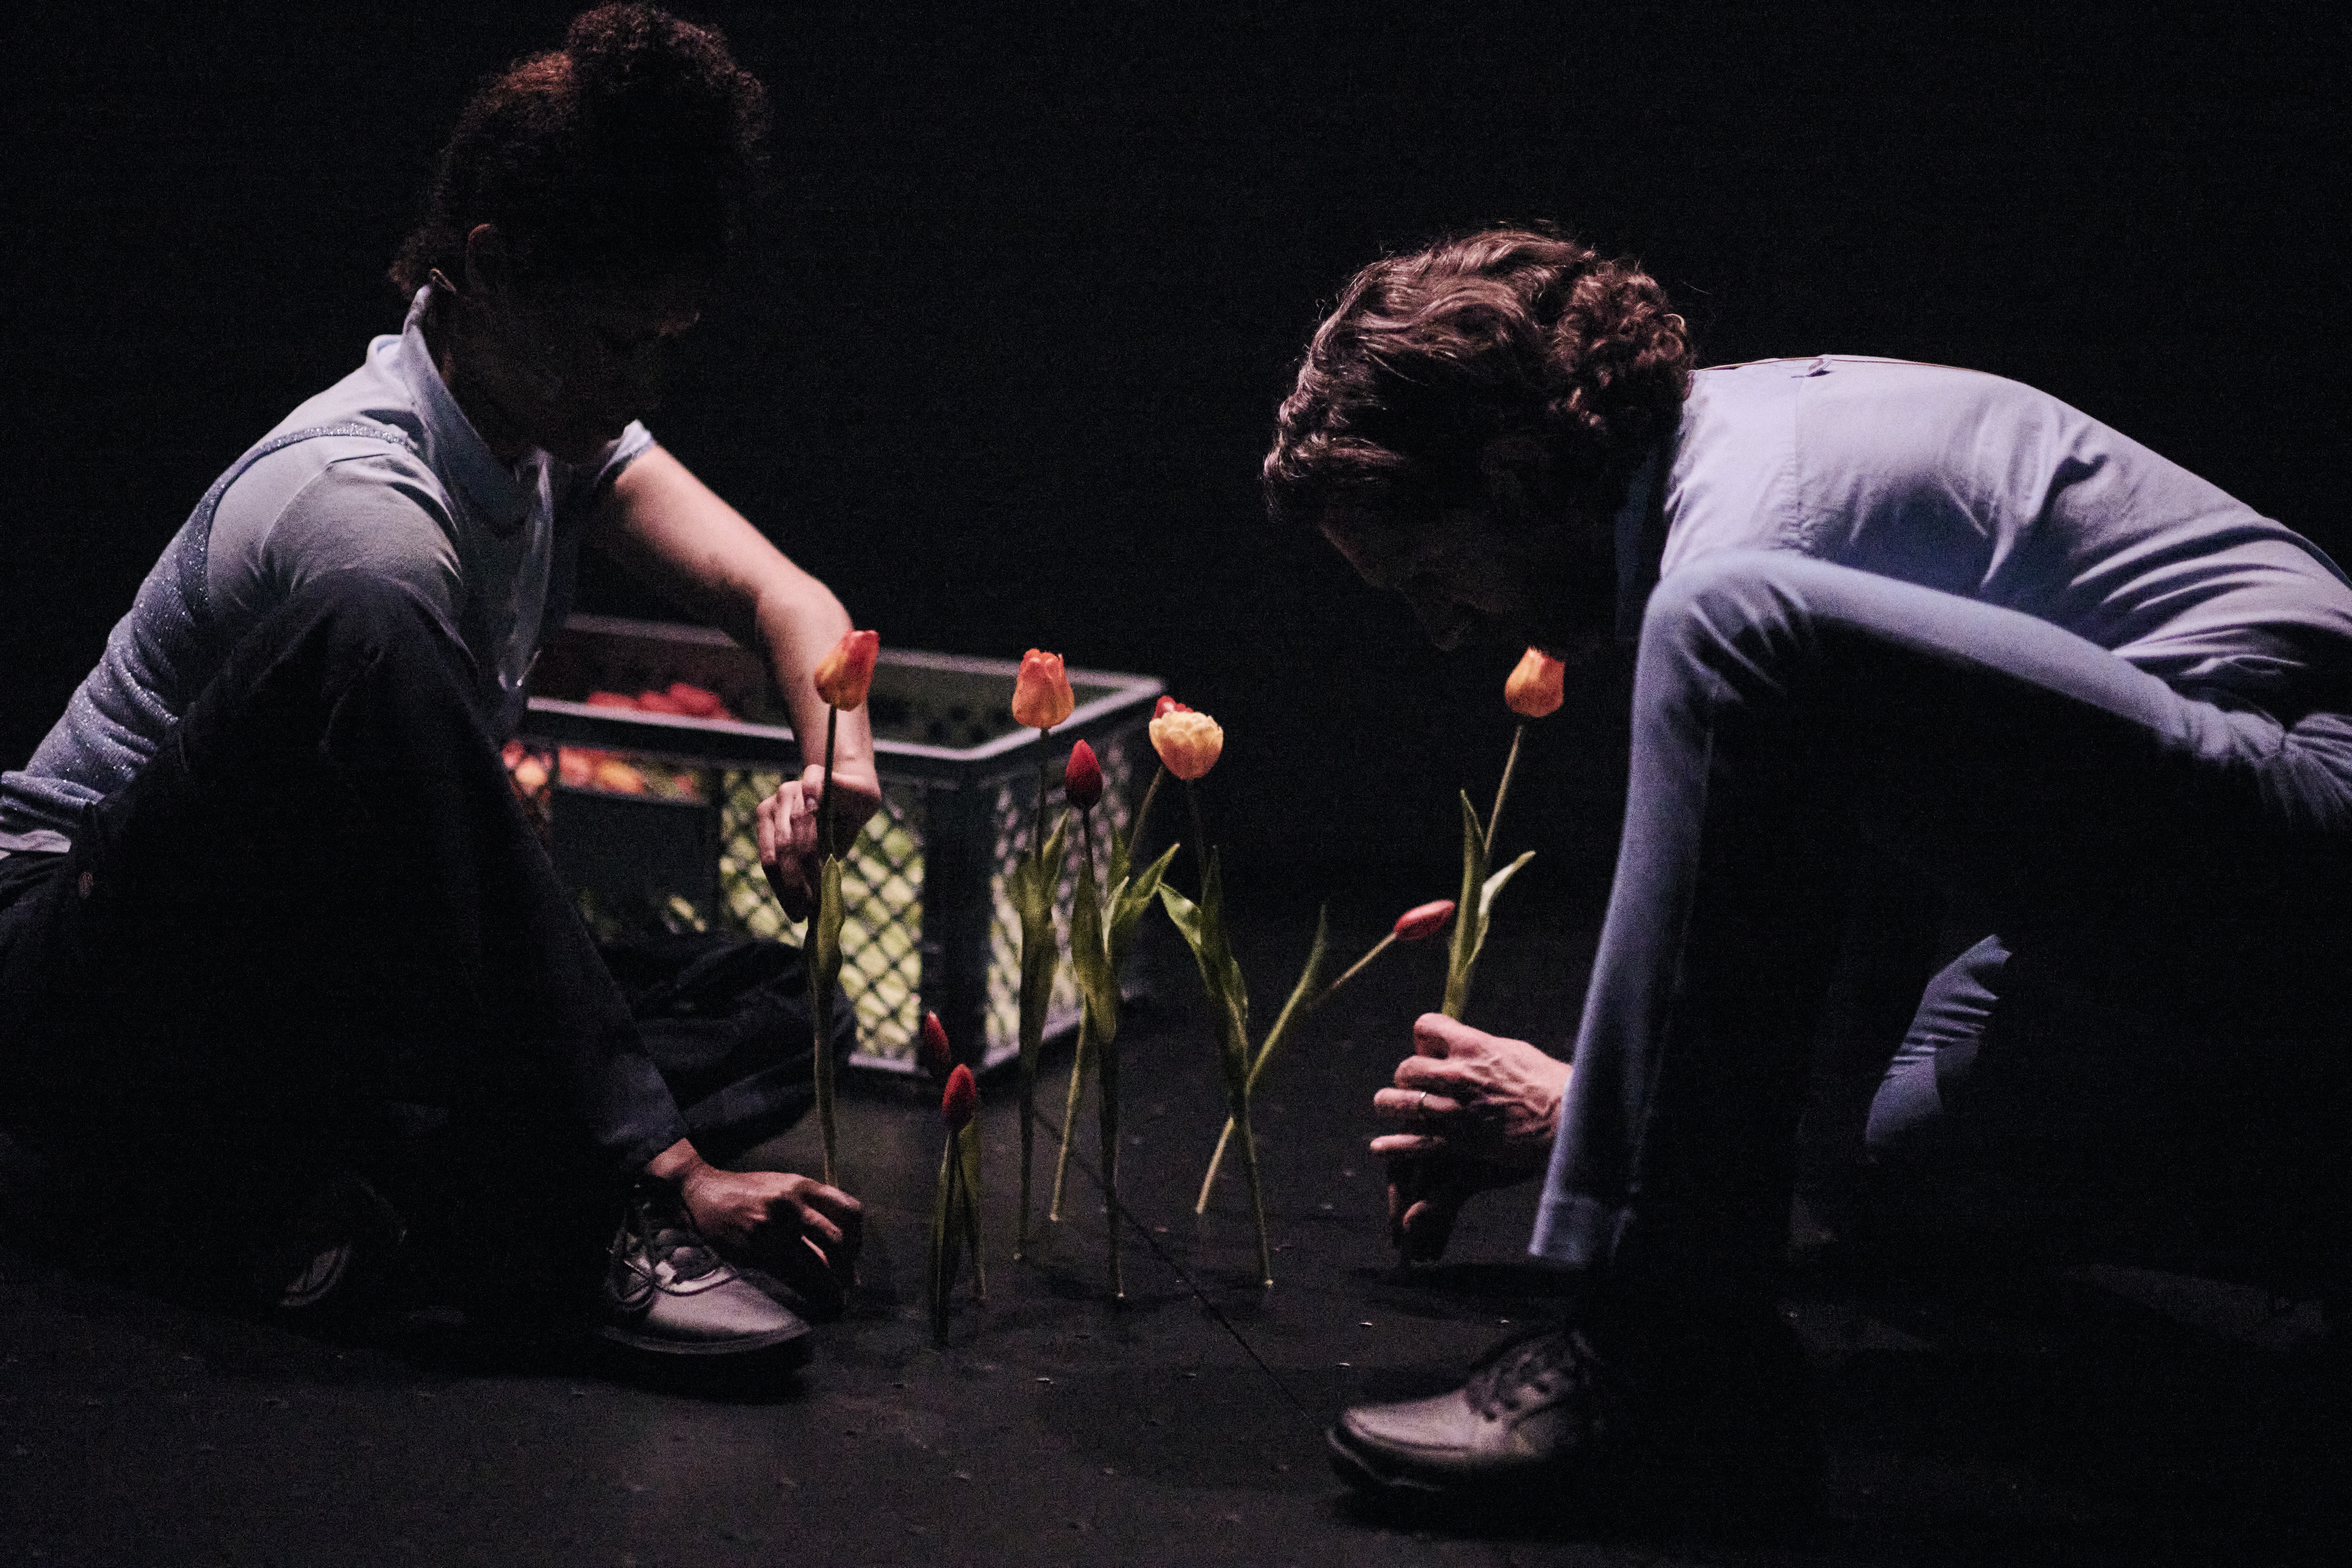 Das Bild ist dunkel gehalten. Man sieht 2 Personen in blauer Kleidung, die am Boden sitzen. Sie stecken rote Tulpen in den Bühnenboden.